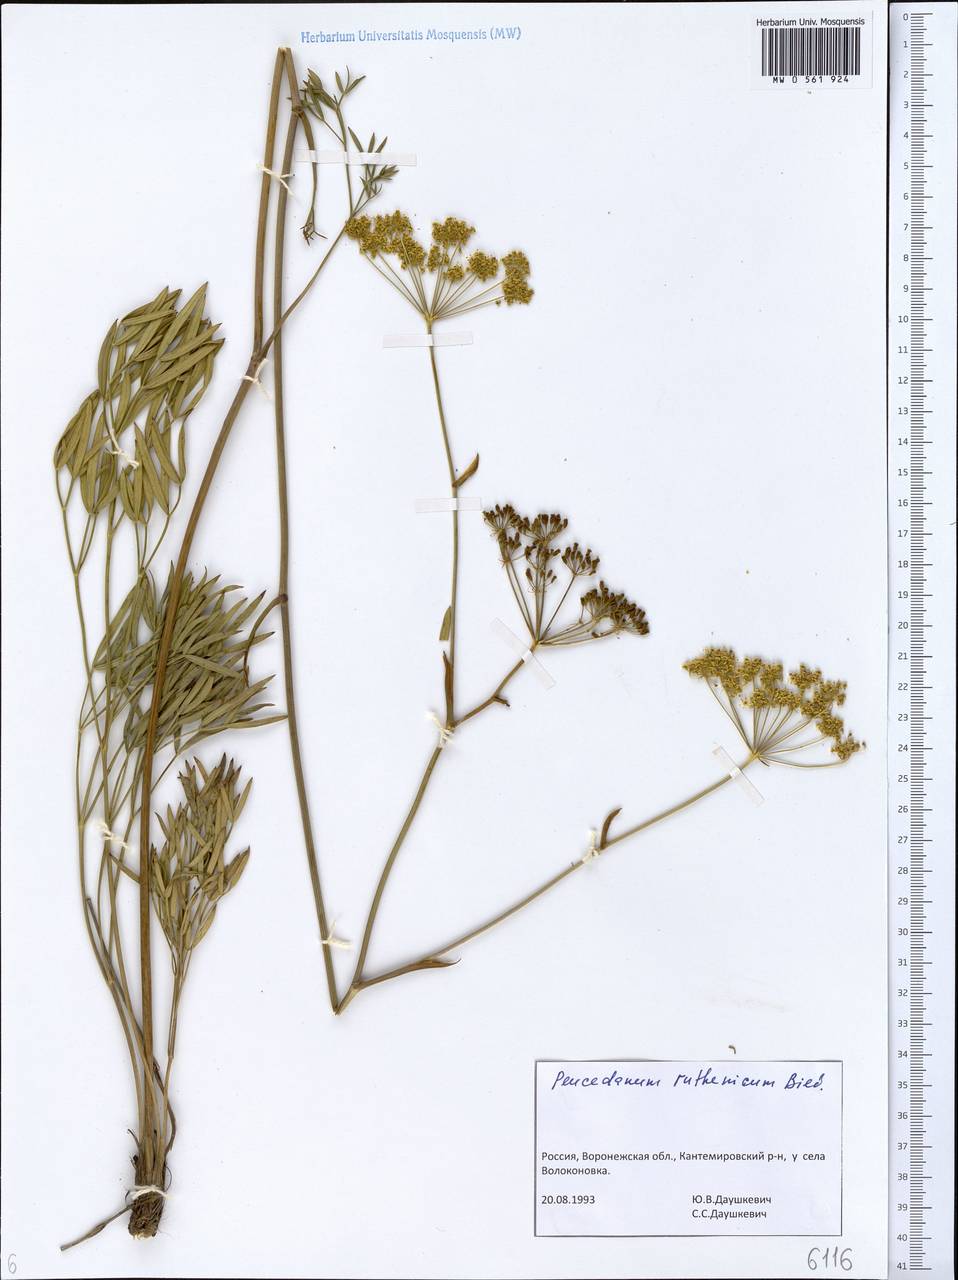 Peucedanum ruthenicum M. Bieb., Eastern Europe, Central forest-and-steppe region (E6) (Russia)